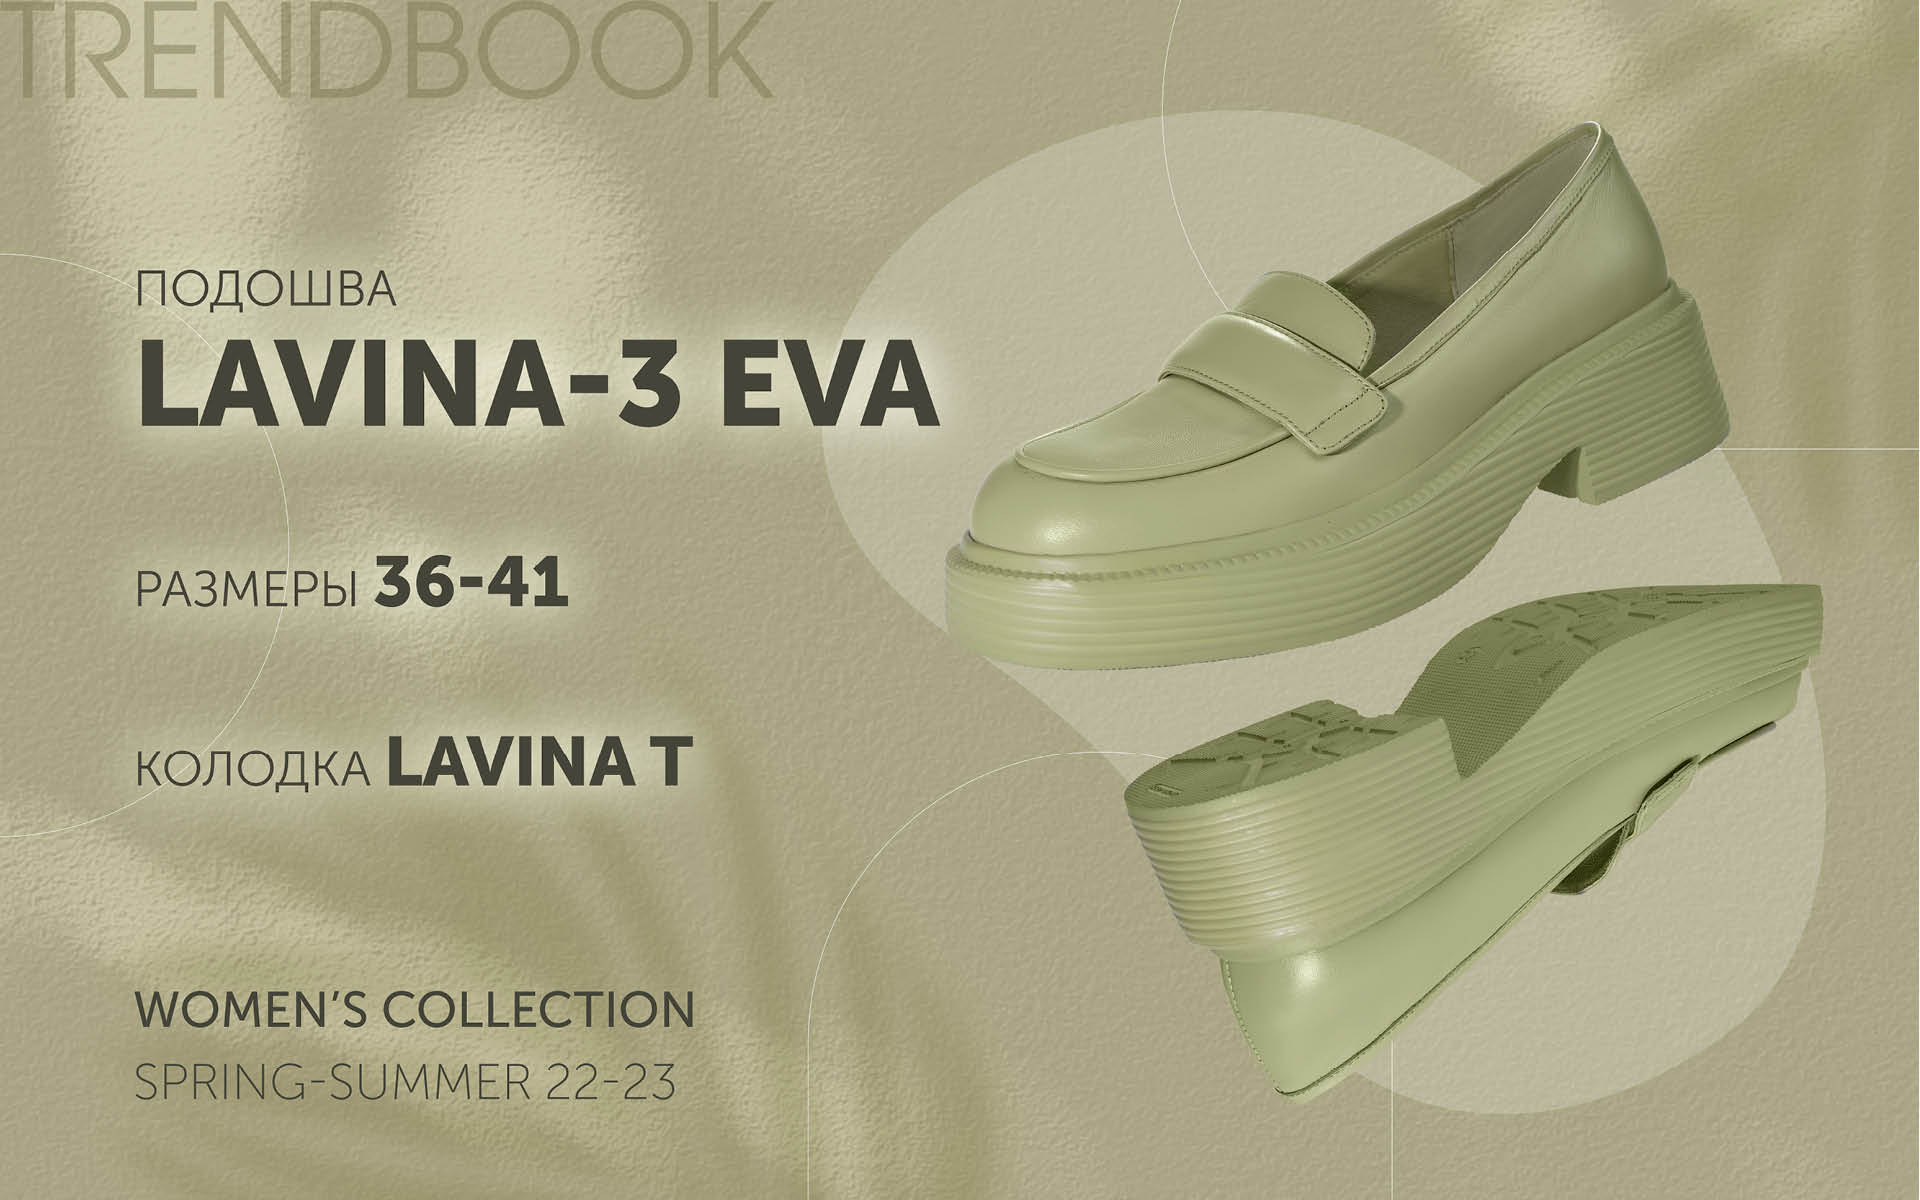 Lavina-3 EVA